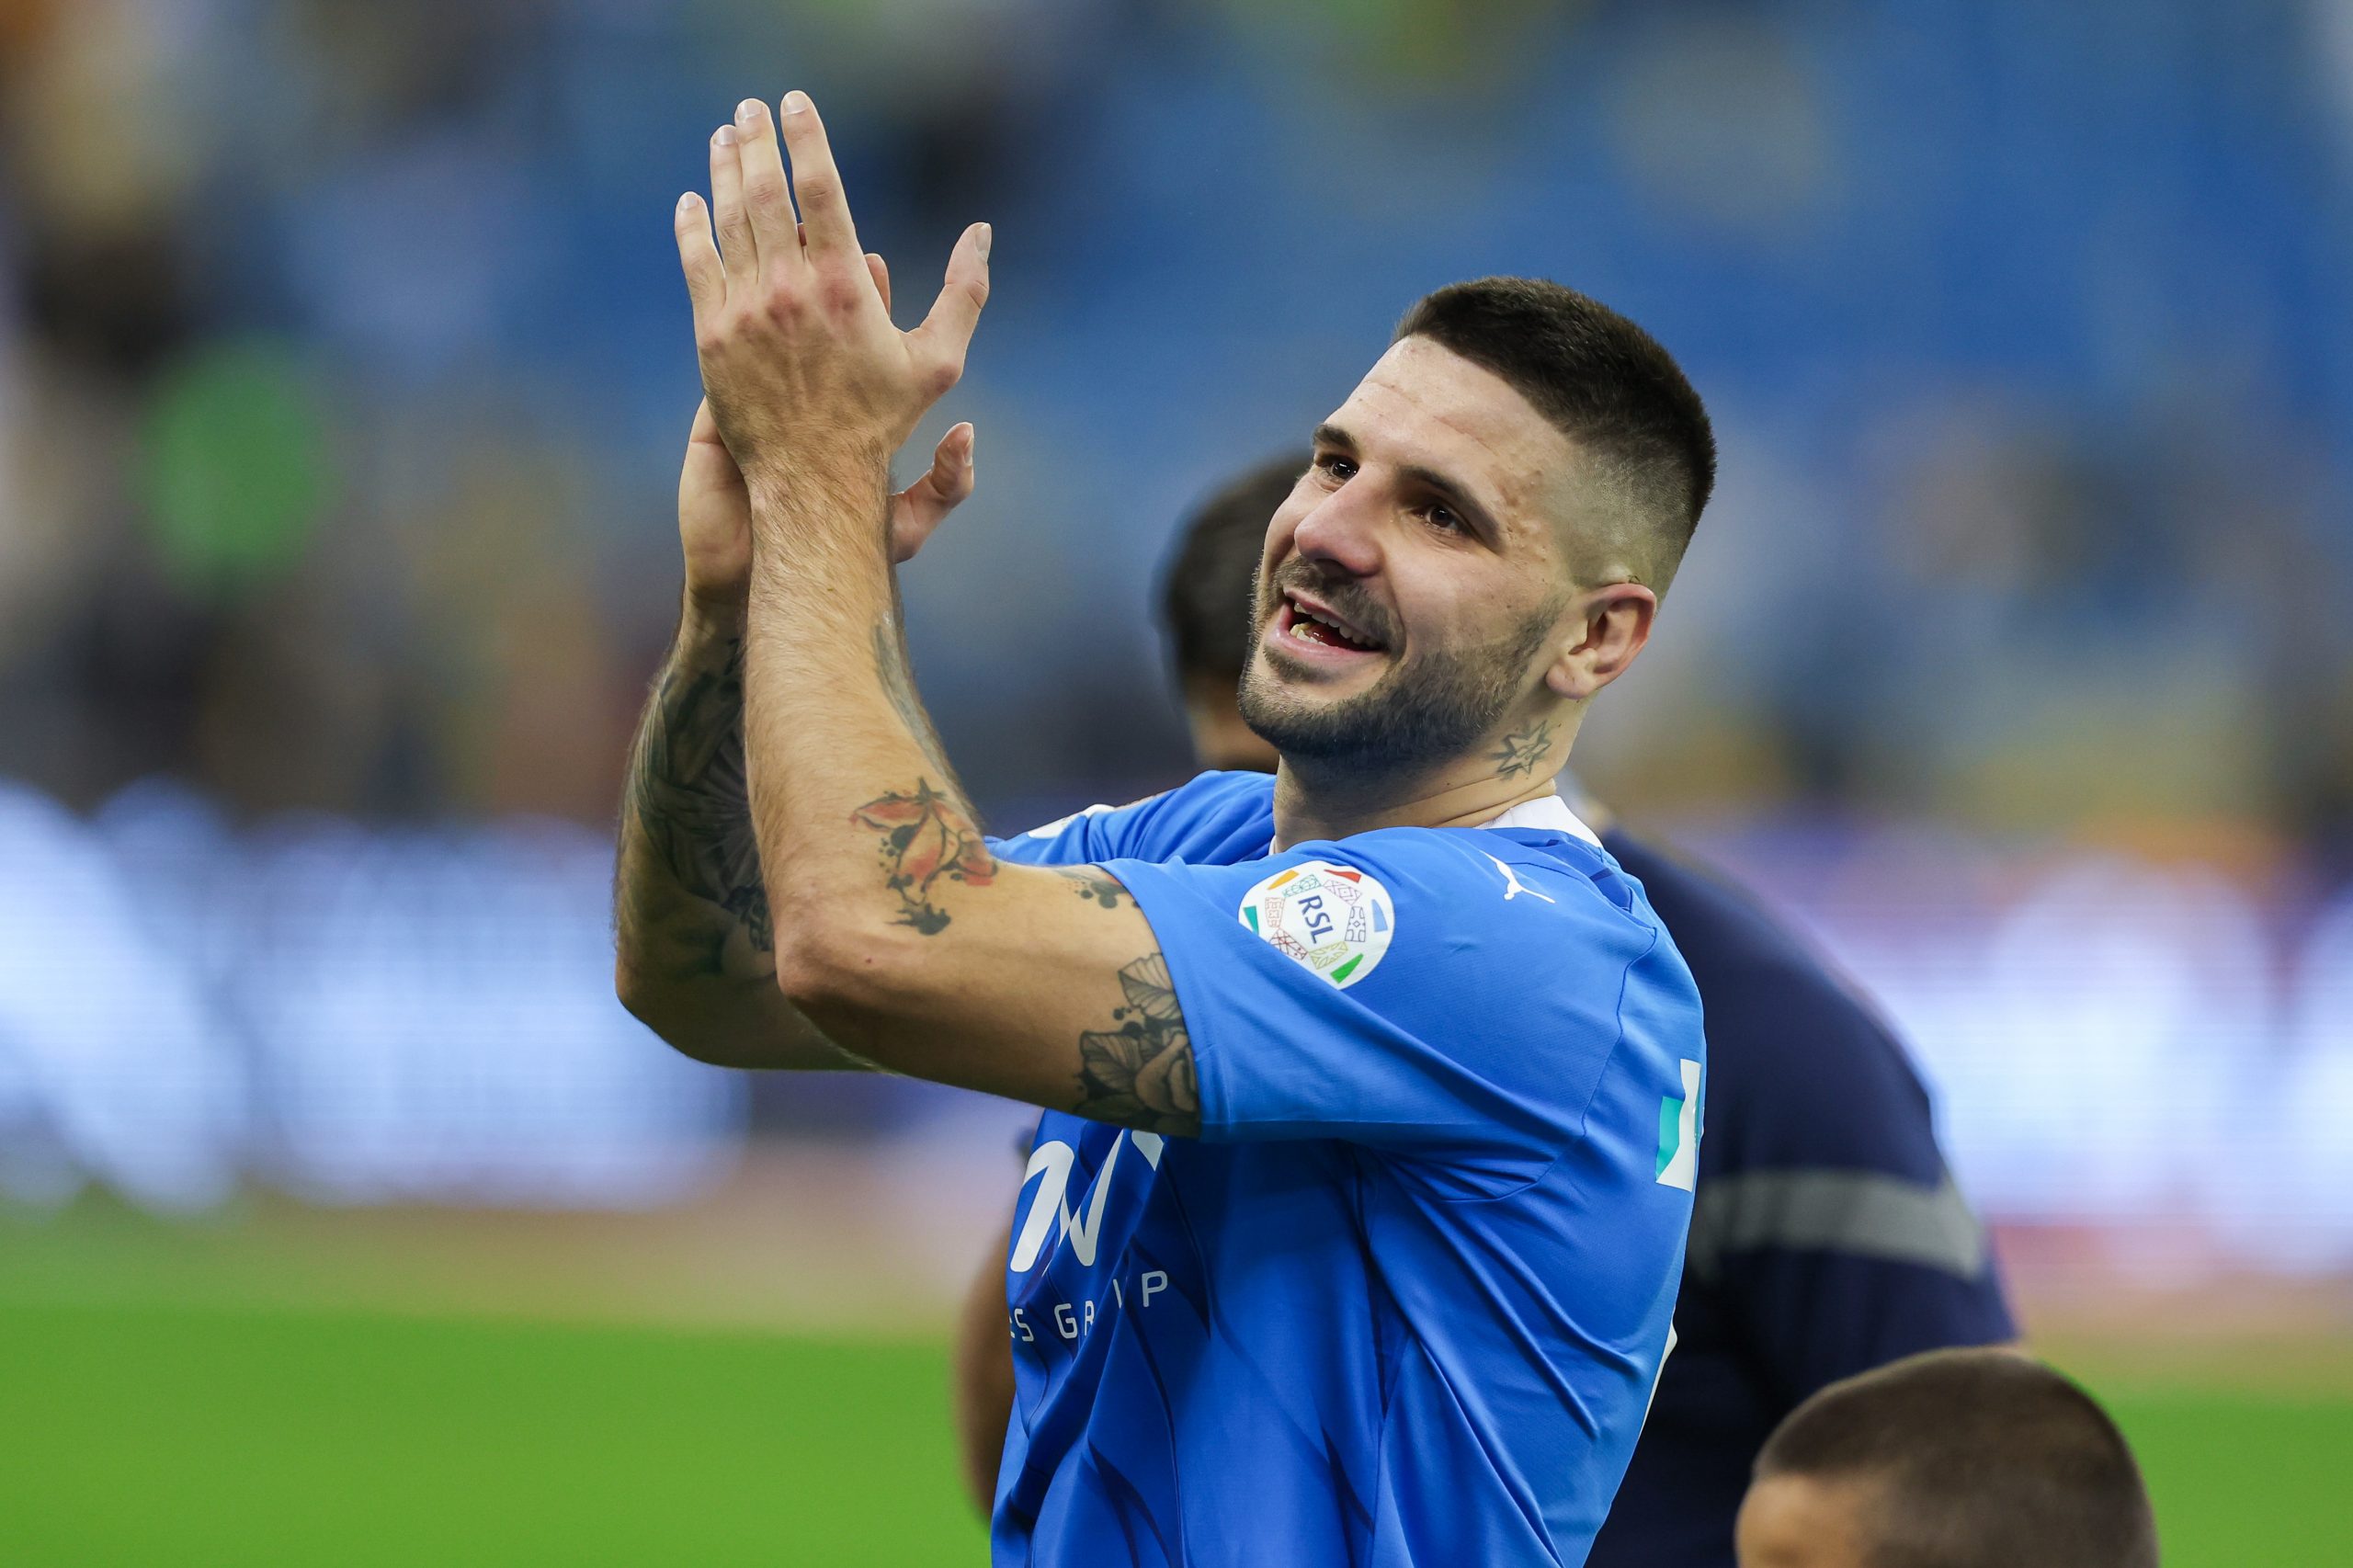 Mitrovic celebra o gol (Foto: Yasser Bakhsh/Getty Images)